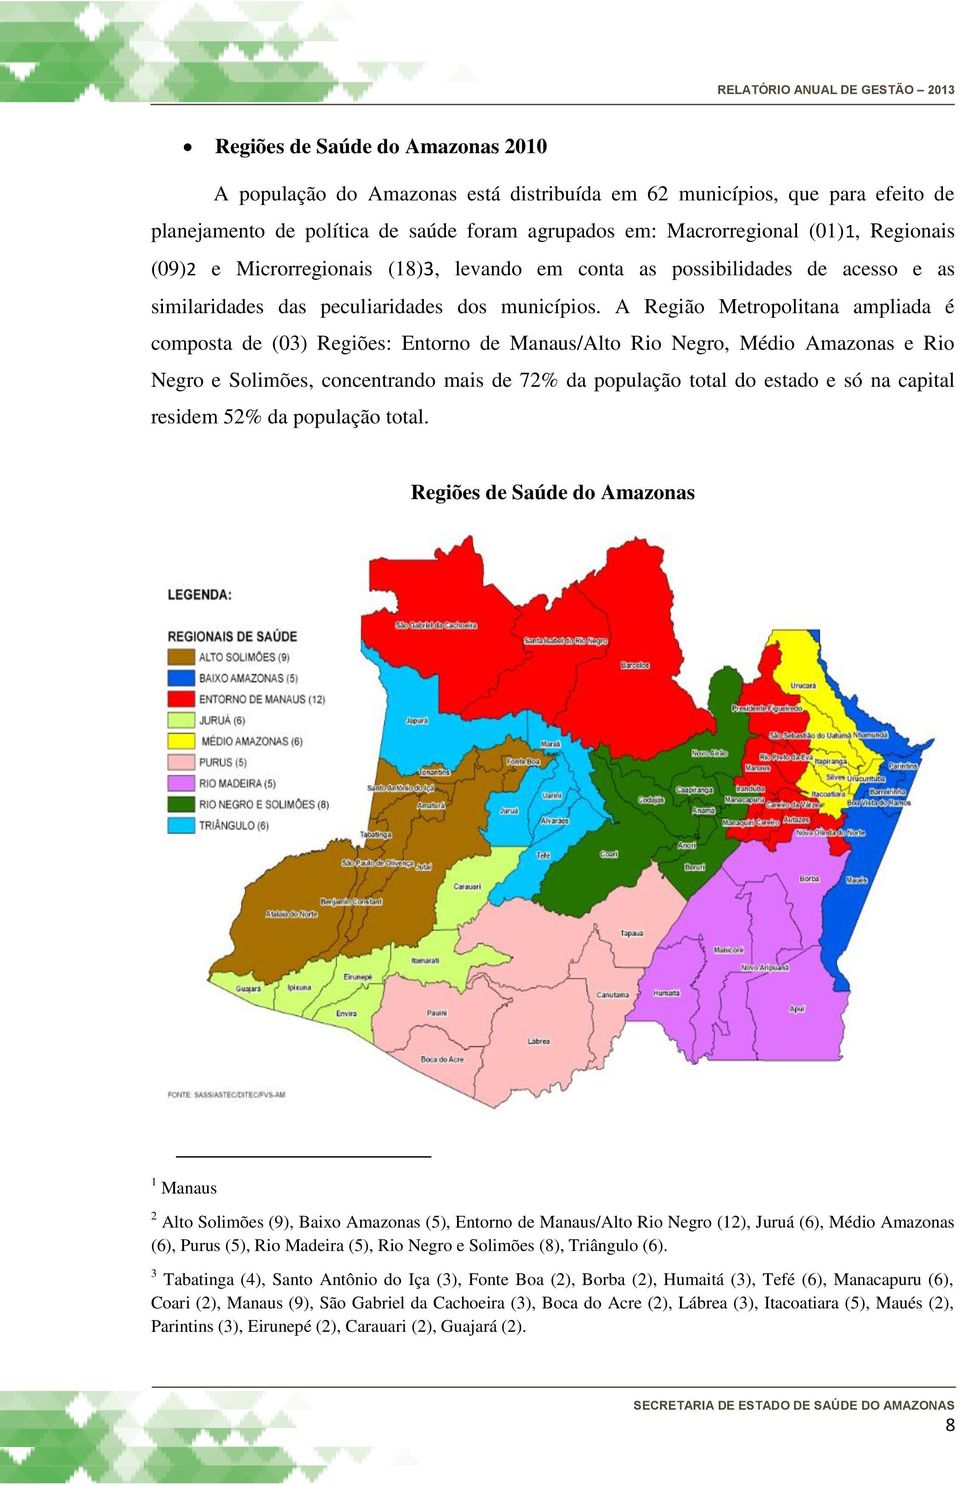 A Região Metropolitana ampliada é composta de (03) Regiões: Entorno de Manaus/Alto Rio Negro, Médio Amazonas e Rio Negro e Solimões, concentrando mais de 72% da população total do estado e só na